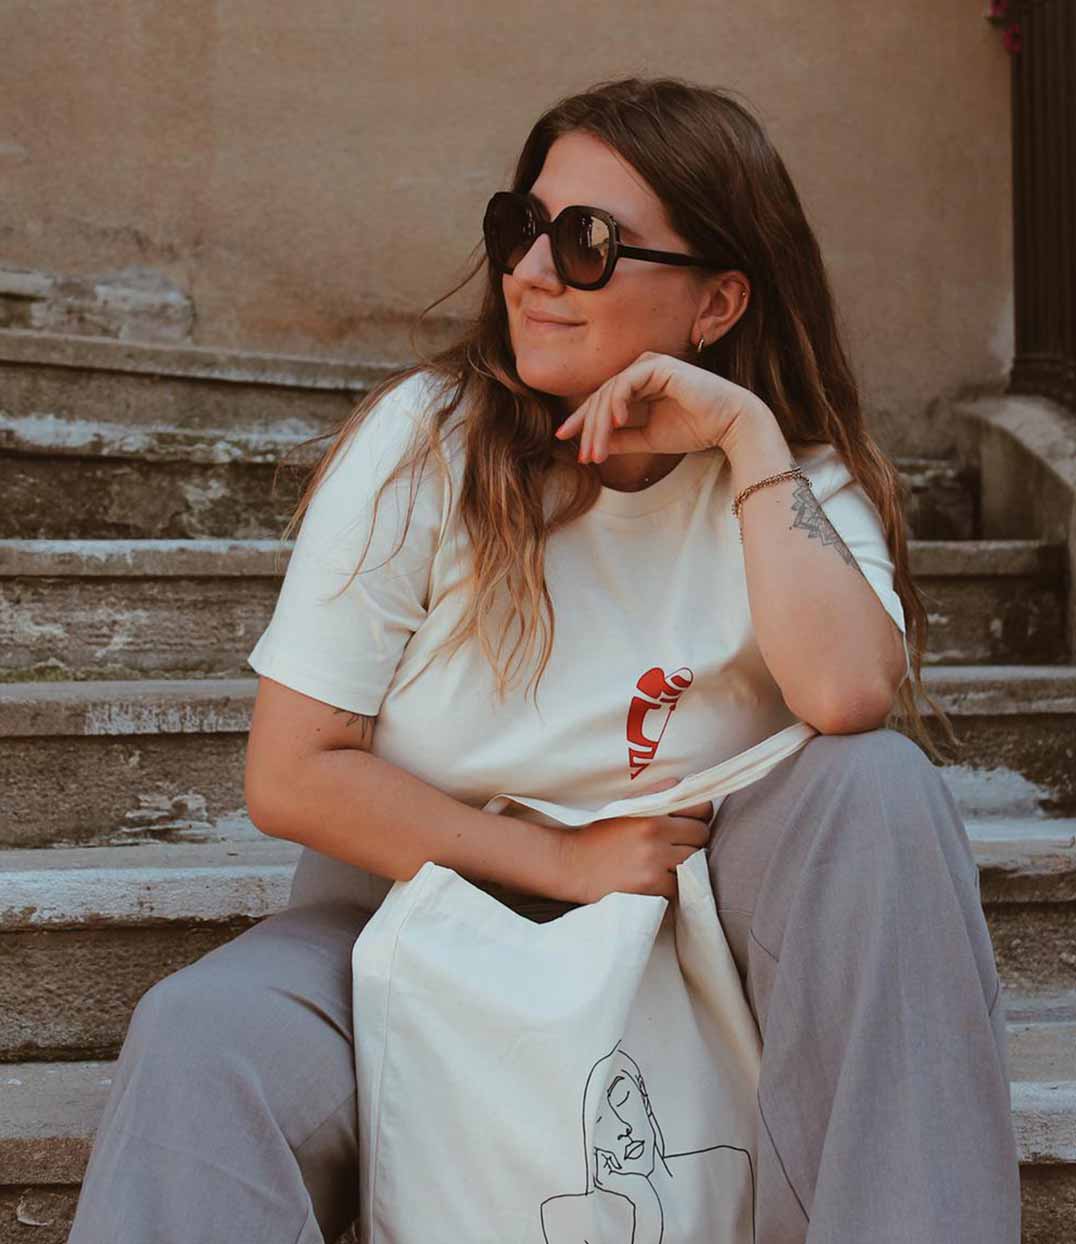 femme assise portant un t-shirt creme leonorroversi